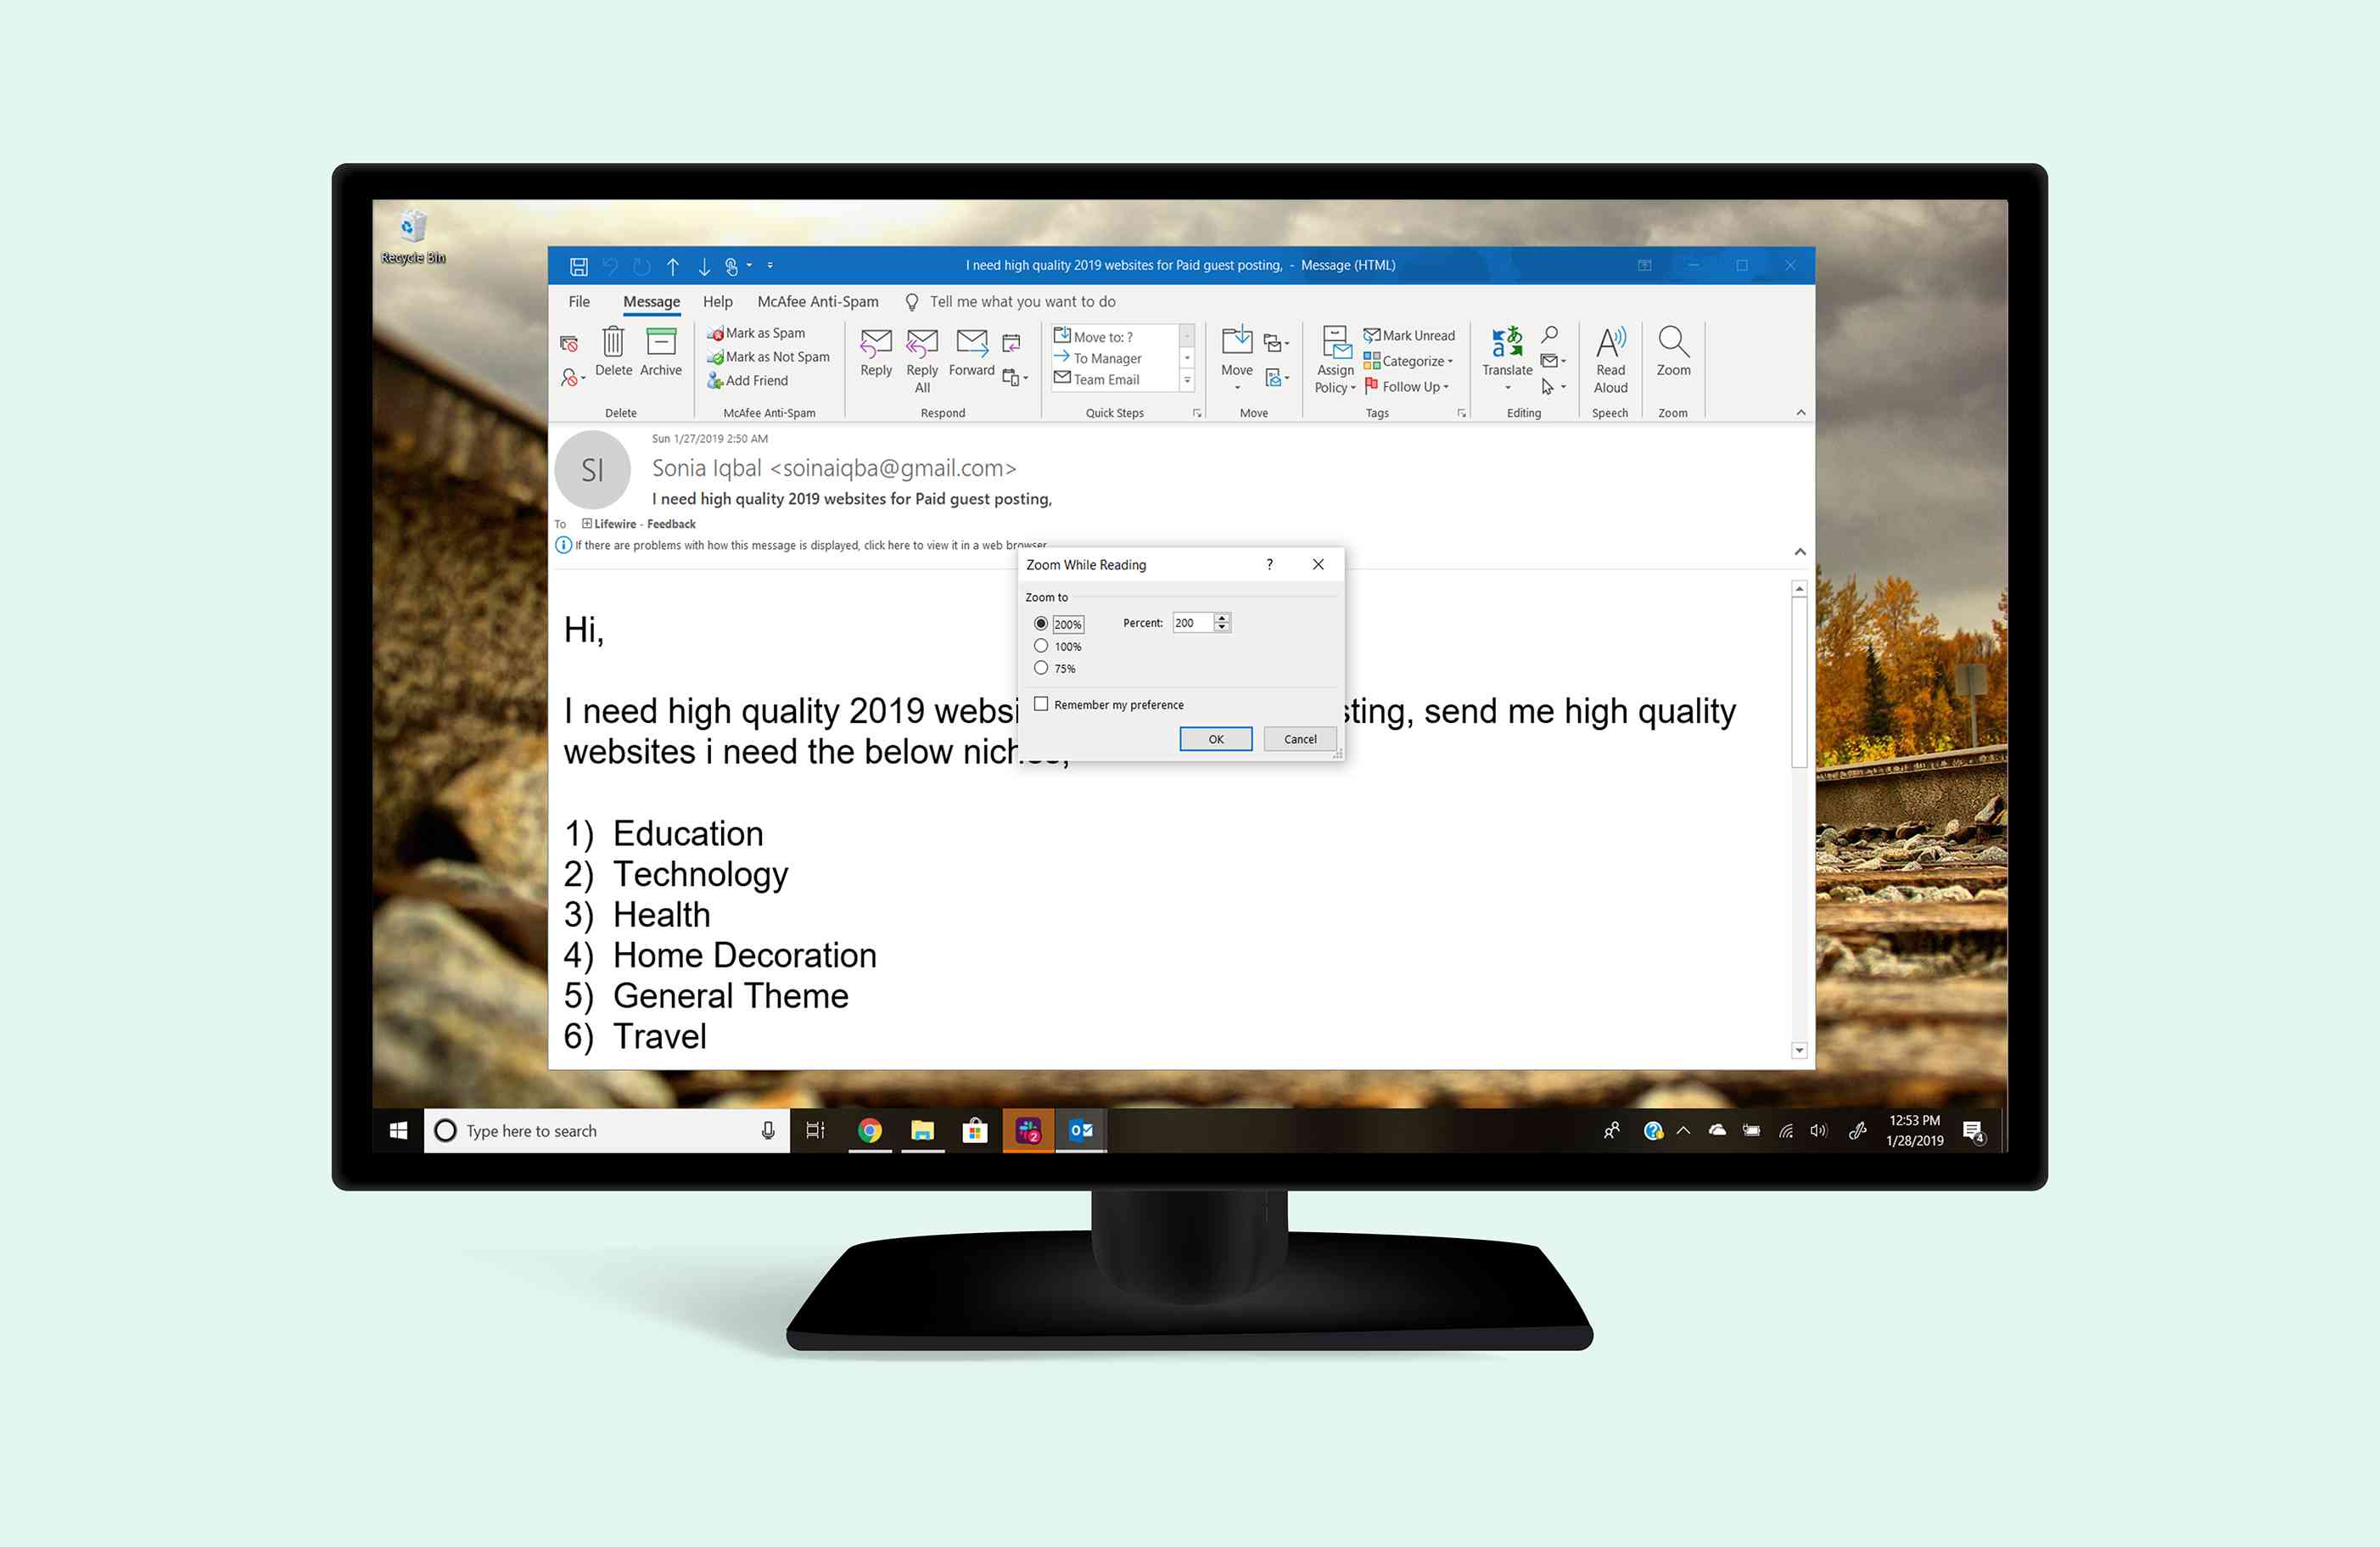 Aplikace Outlook ve Windows 10 zobrazuje dialog Velikost písma